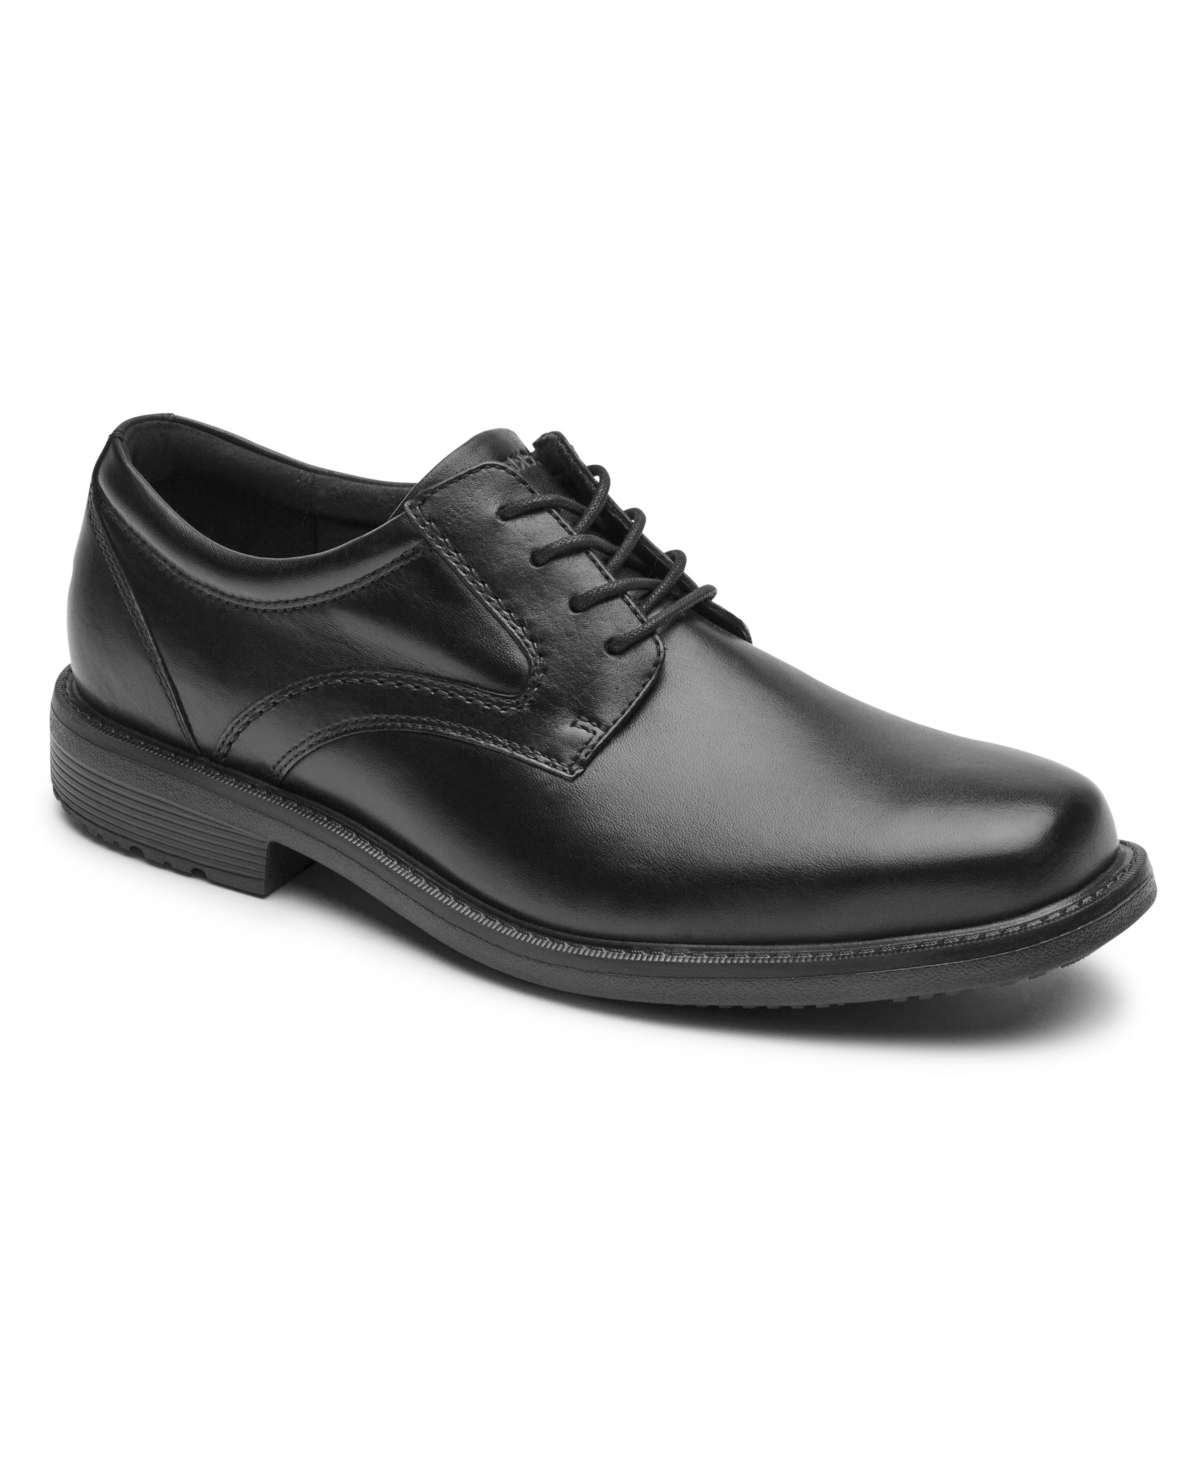 Men's Sl2 Plain Toe Lace Up Shoes - Black